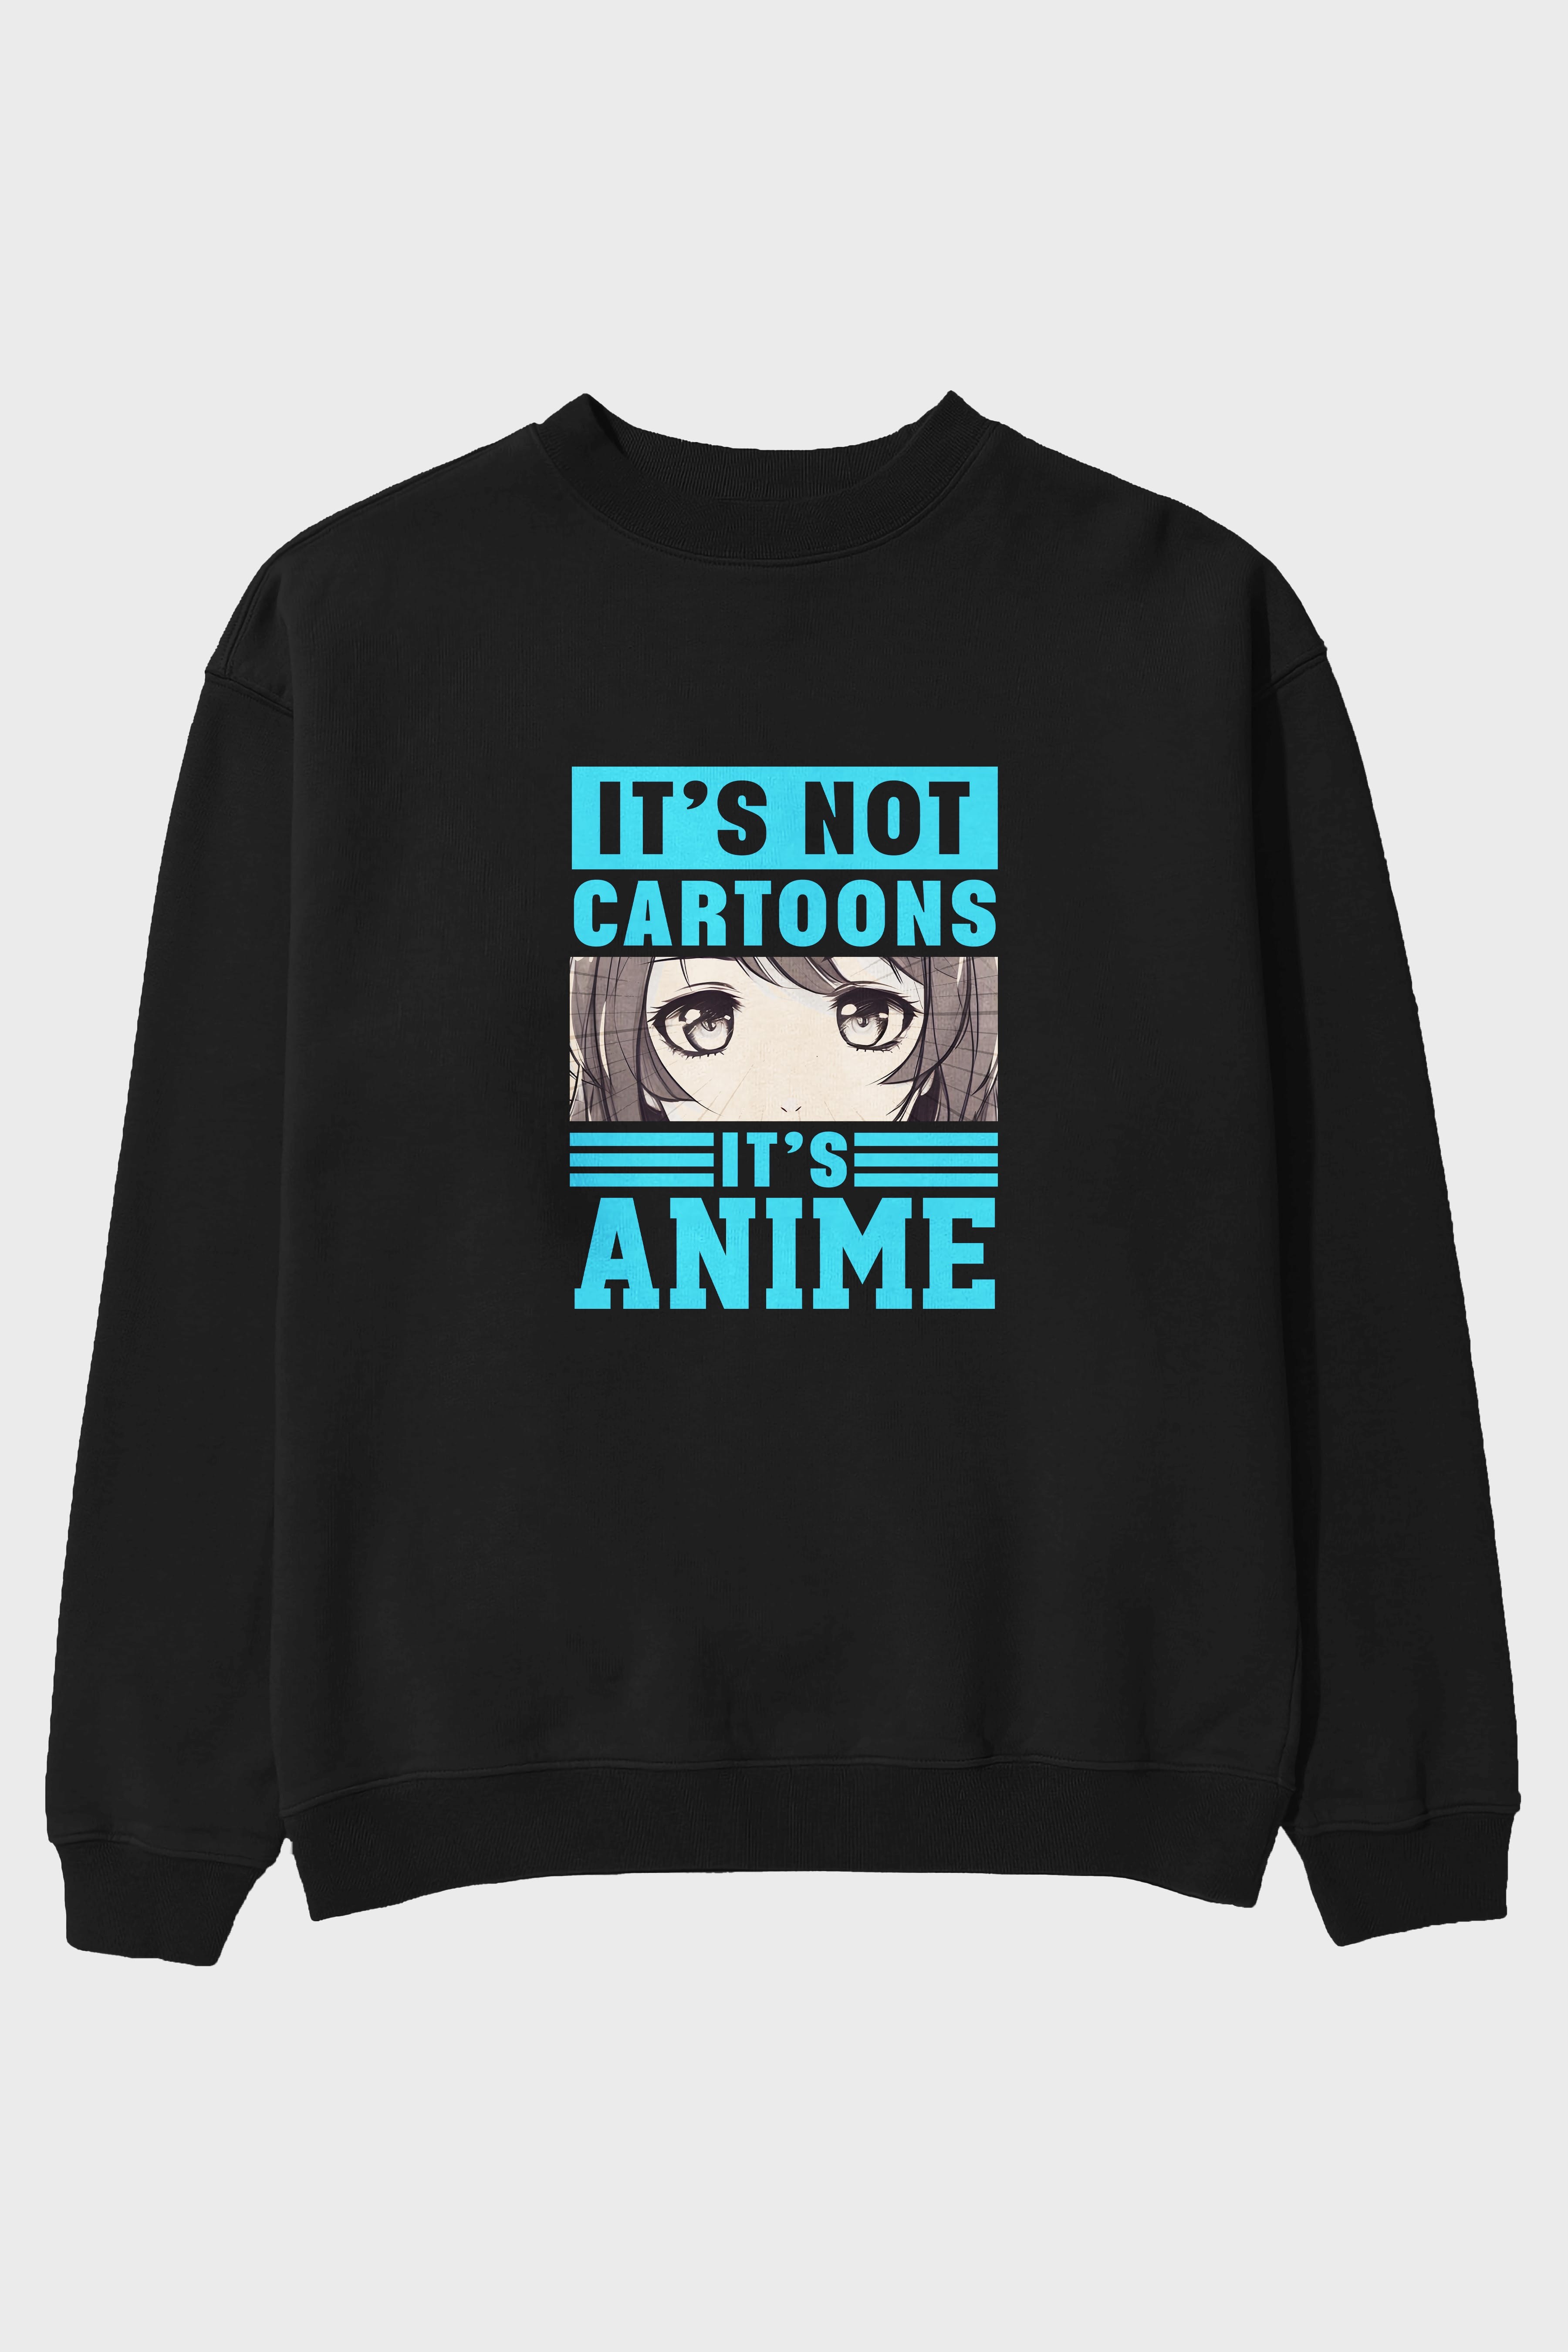 Its Anime Ön Baskılı Anime Oversize Sweatshirt Erkek Kadın Unisex